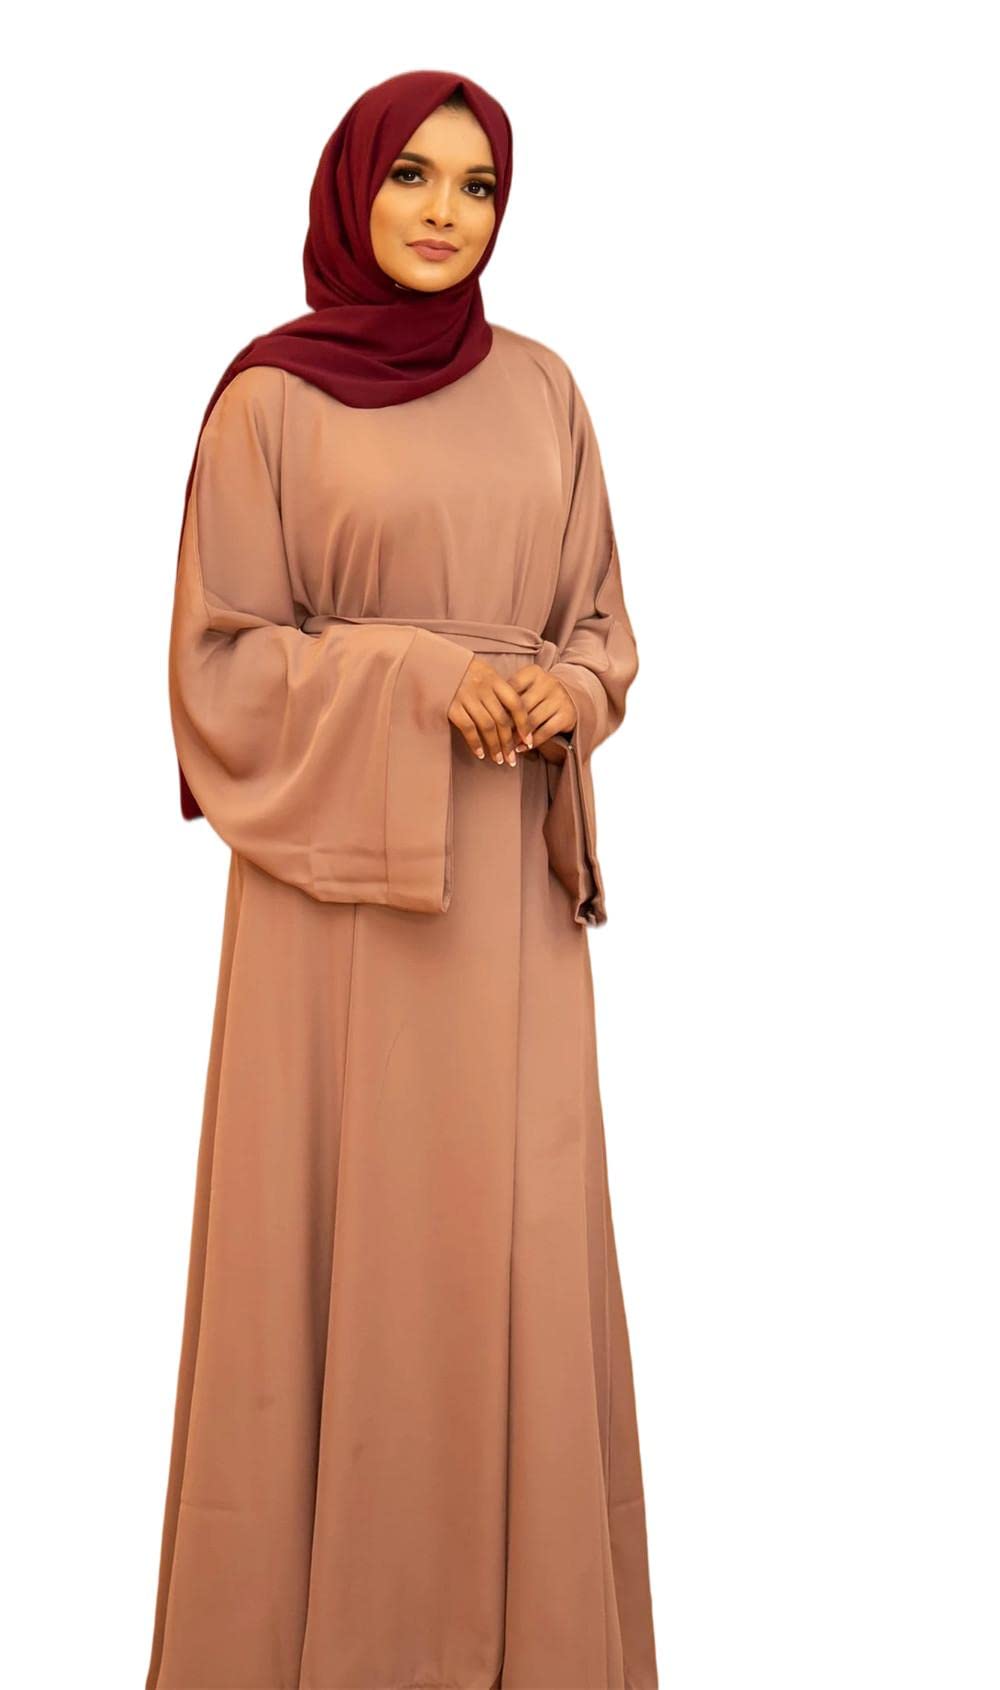 RUIG Muslimisches Gebetskleid für Frauen Abaya Kleid Islamisches Maxi Afrikanisches Kaftan Türkei Islam Kleid in voller Länge, Khaki, XL